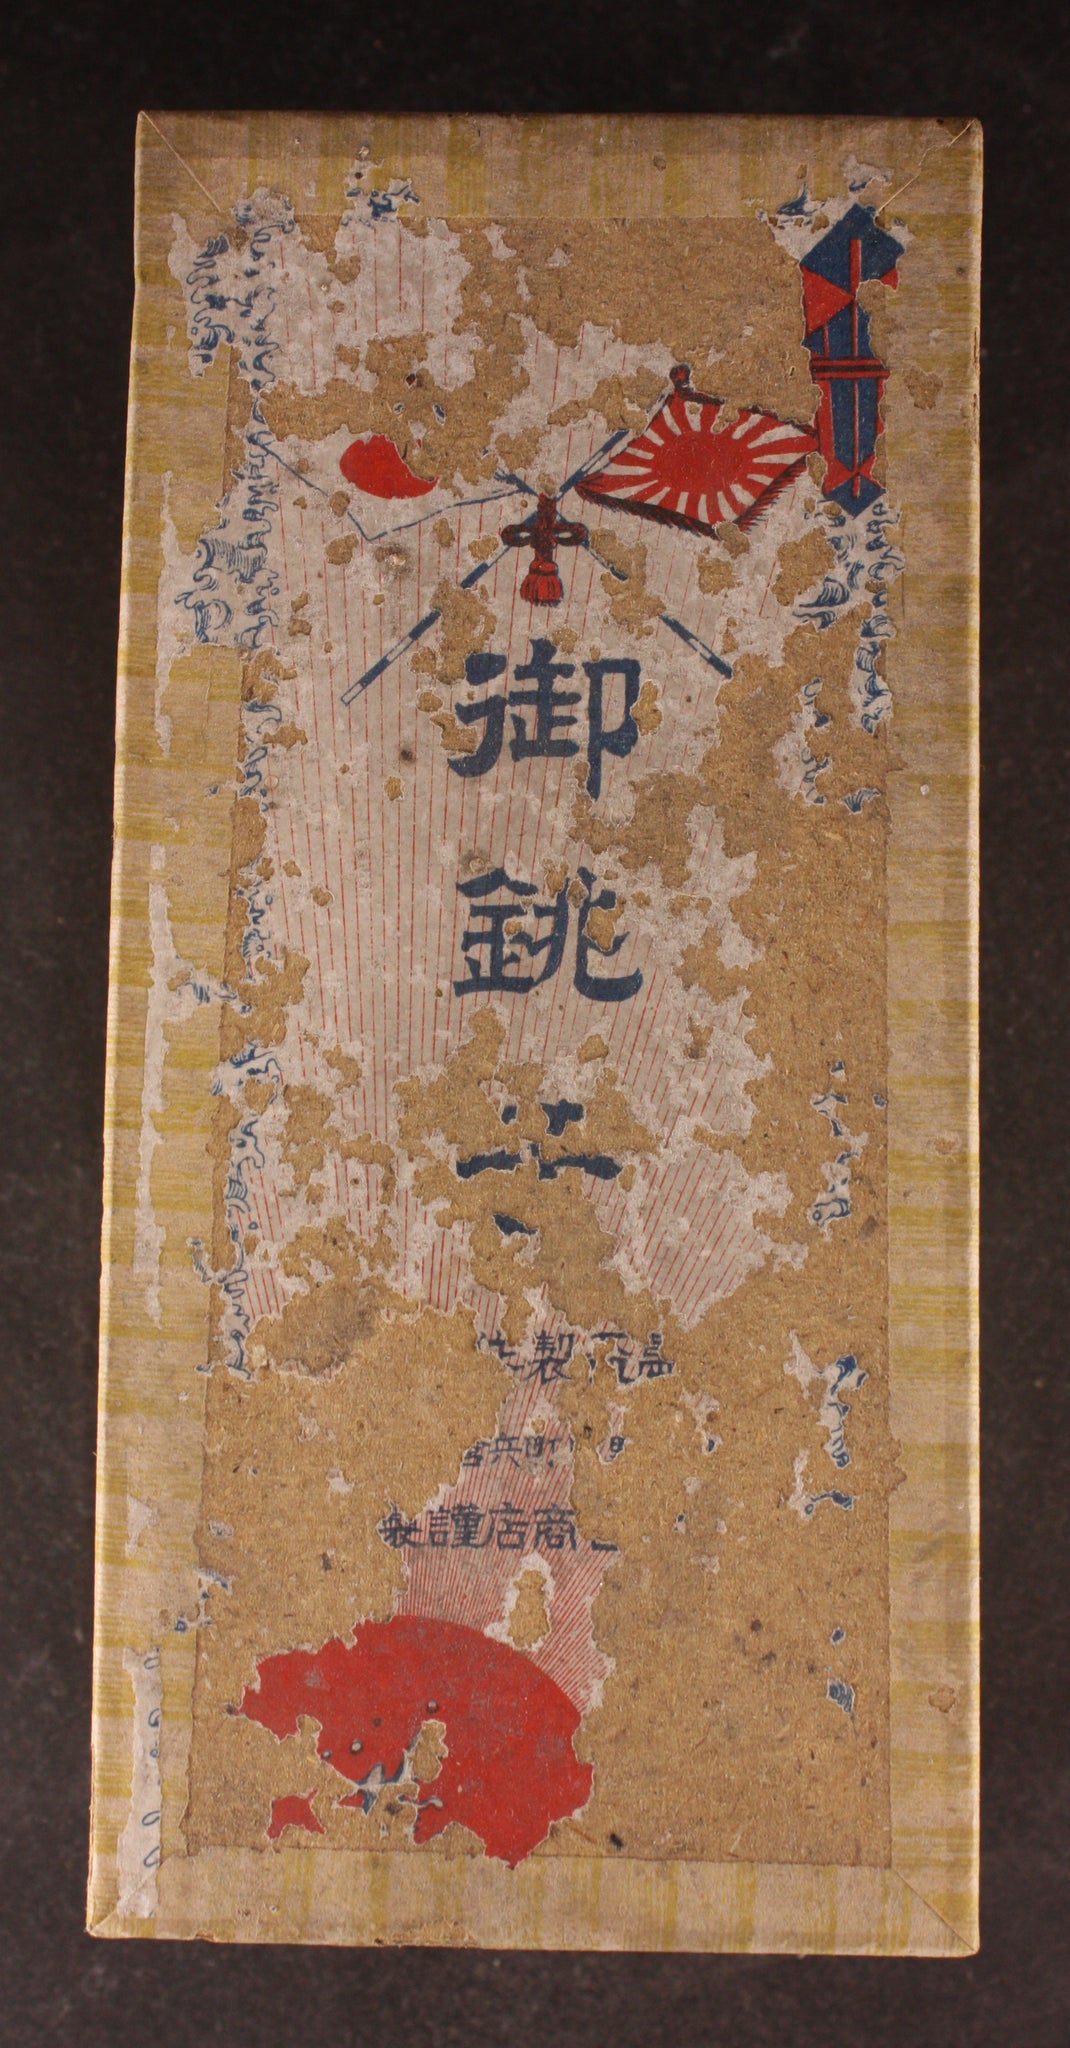 Rare Antique Japanese Military 1929 Embossed Blossom Infantry Army Sake Bottle